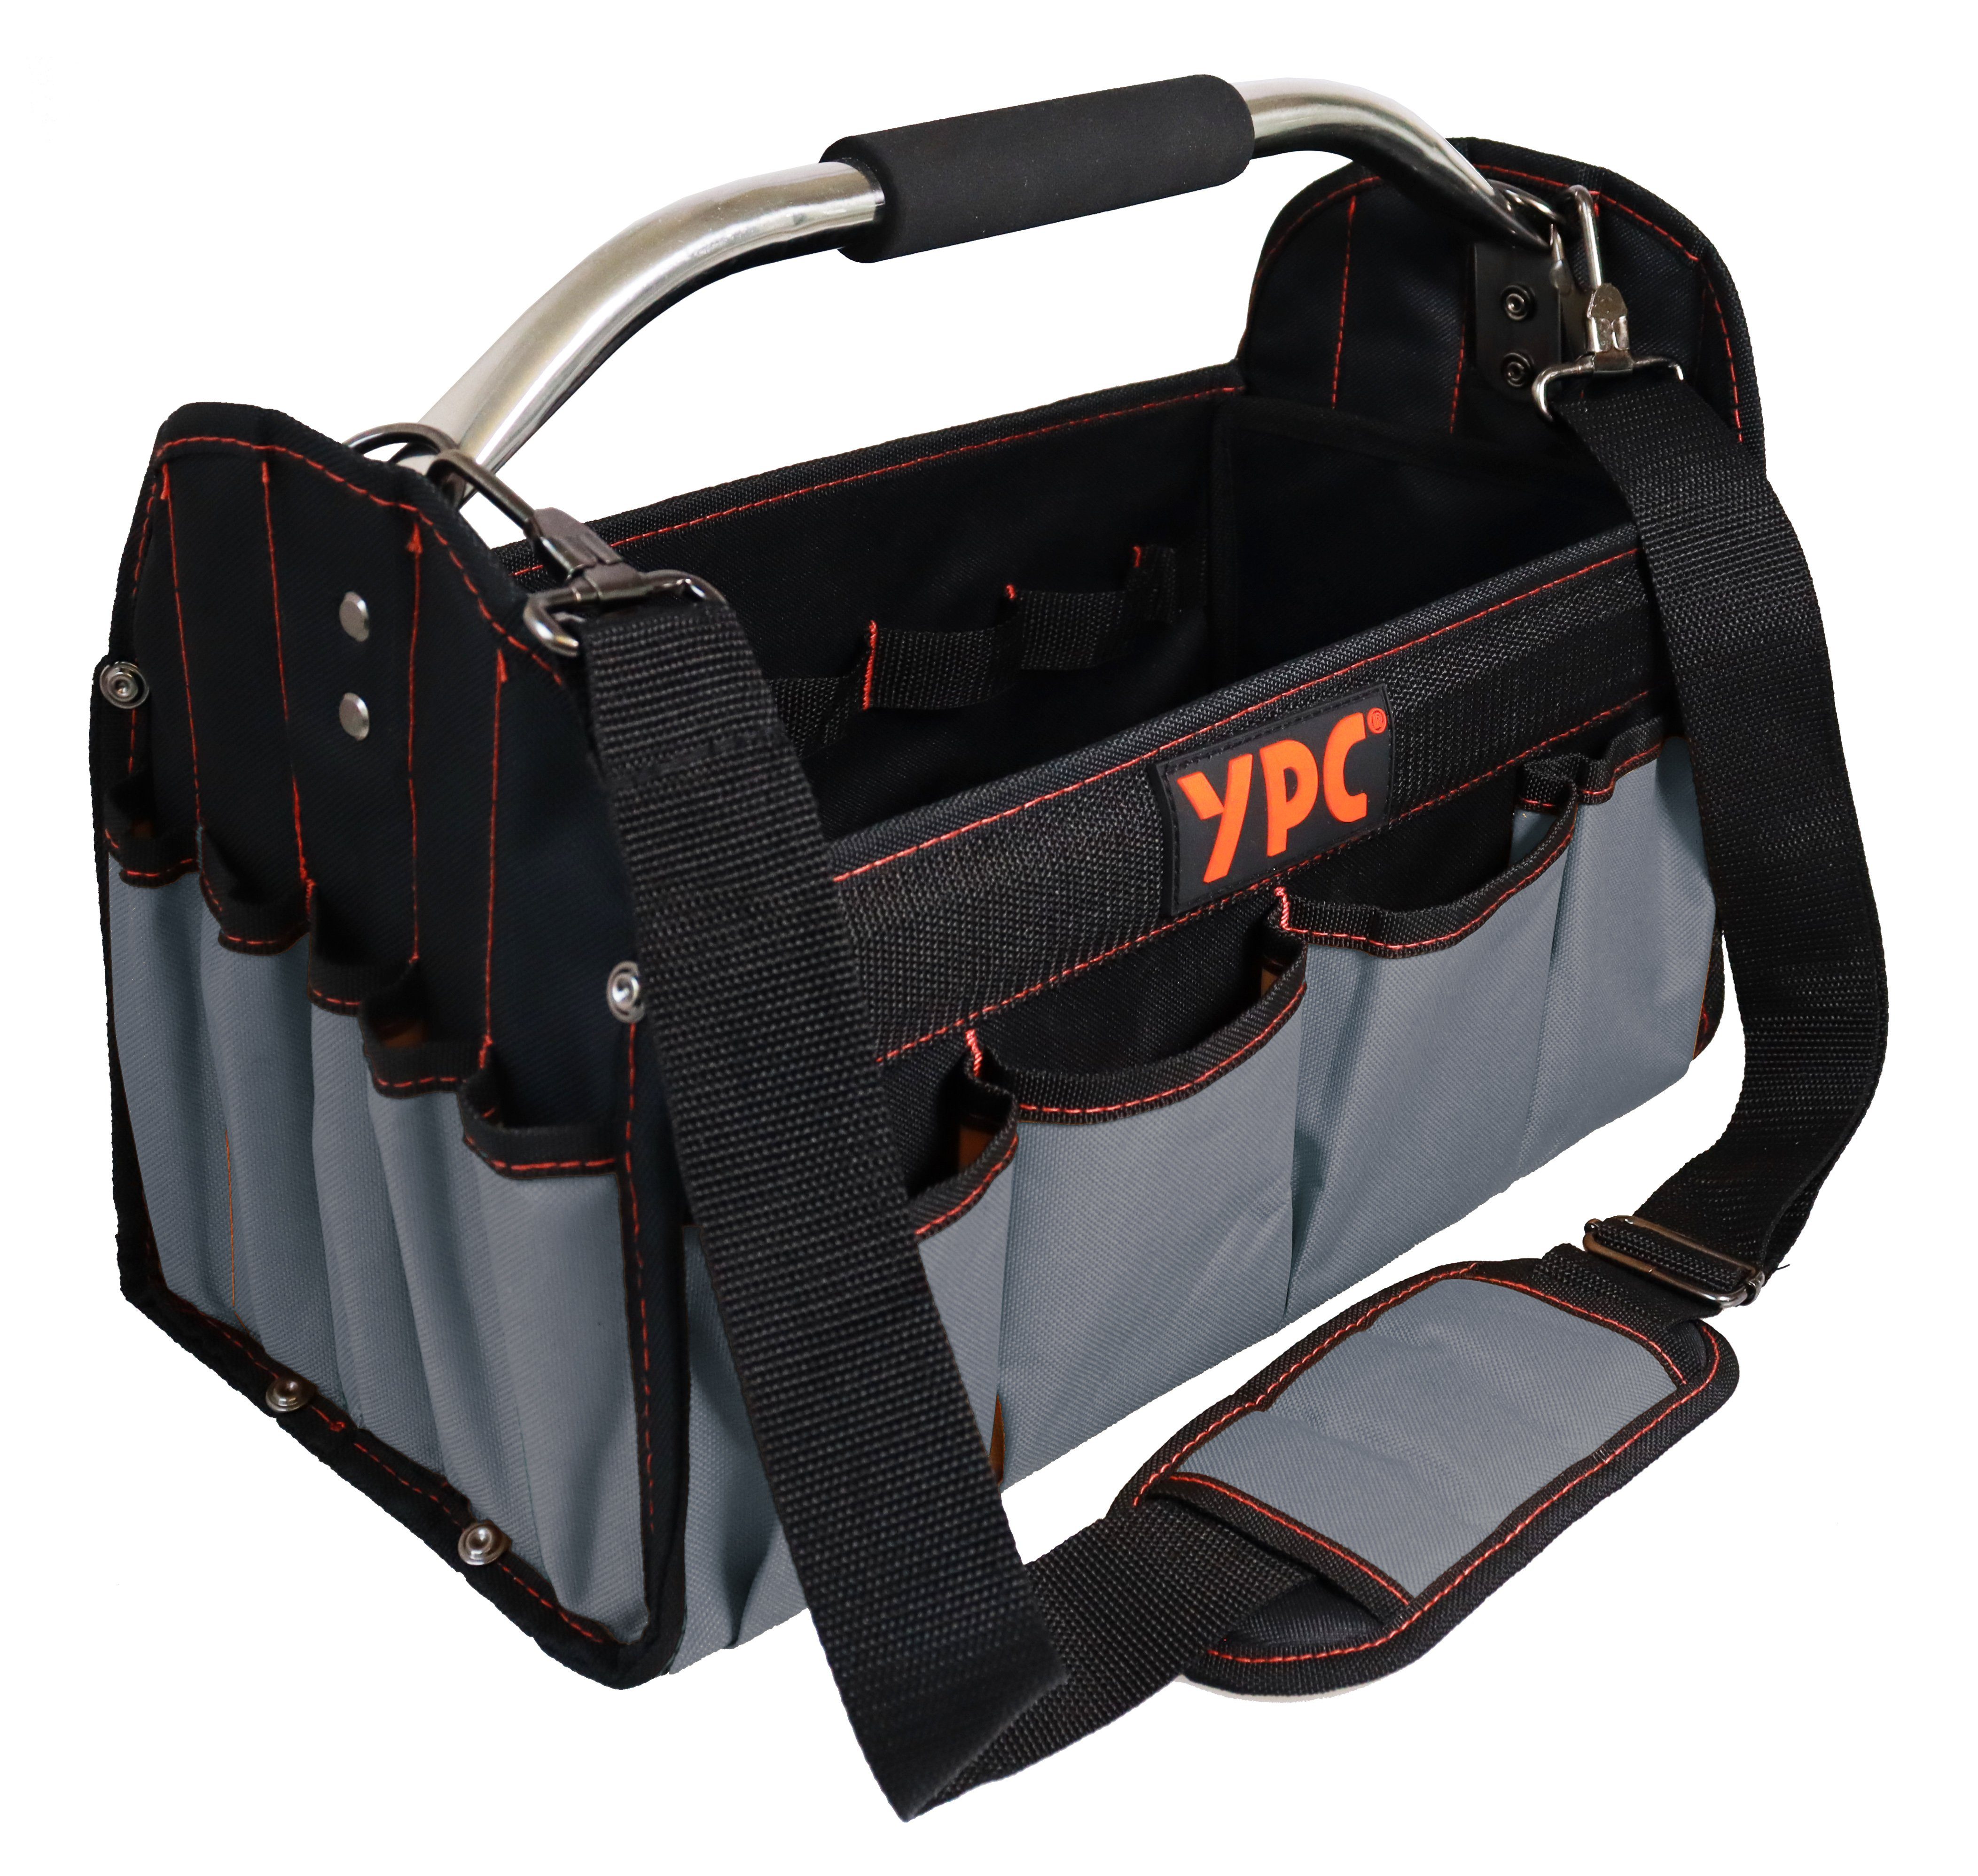 YPC Werkzeugtasche "Carrier" Werkzeugkorb XL, offene Werkzeugtasche mit Metallgriff, 40,5x30x19,5cm, 20 kg Tragkraft, Tragetasche für Werkzeug mit Haltern, Fächern und Einschüben Grau | Werkzeugtaschen